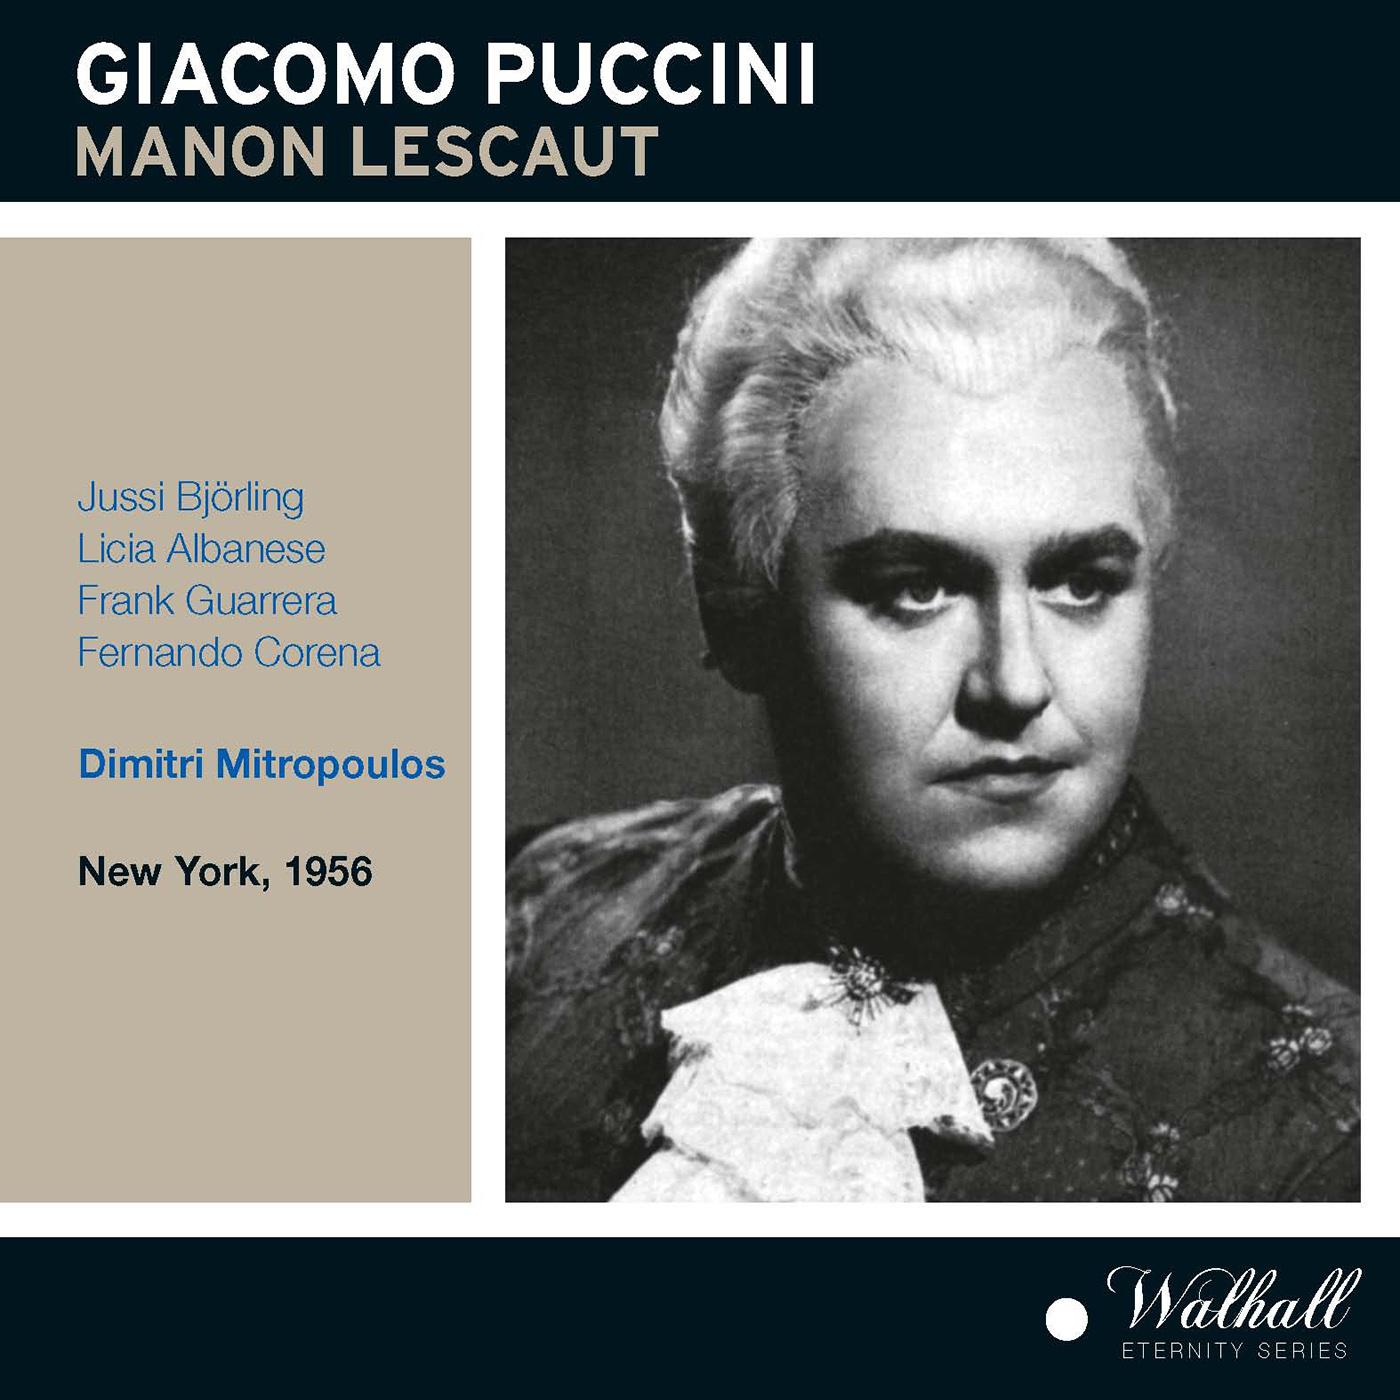 PUCCINI, G.: Manon Lescaut Opera Bj rling, Albanese, Guarrera, Corena, New York Metropolitan Opera Chorus and Orchestra, Mitropoulos 1949, 1956